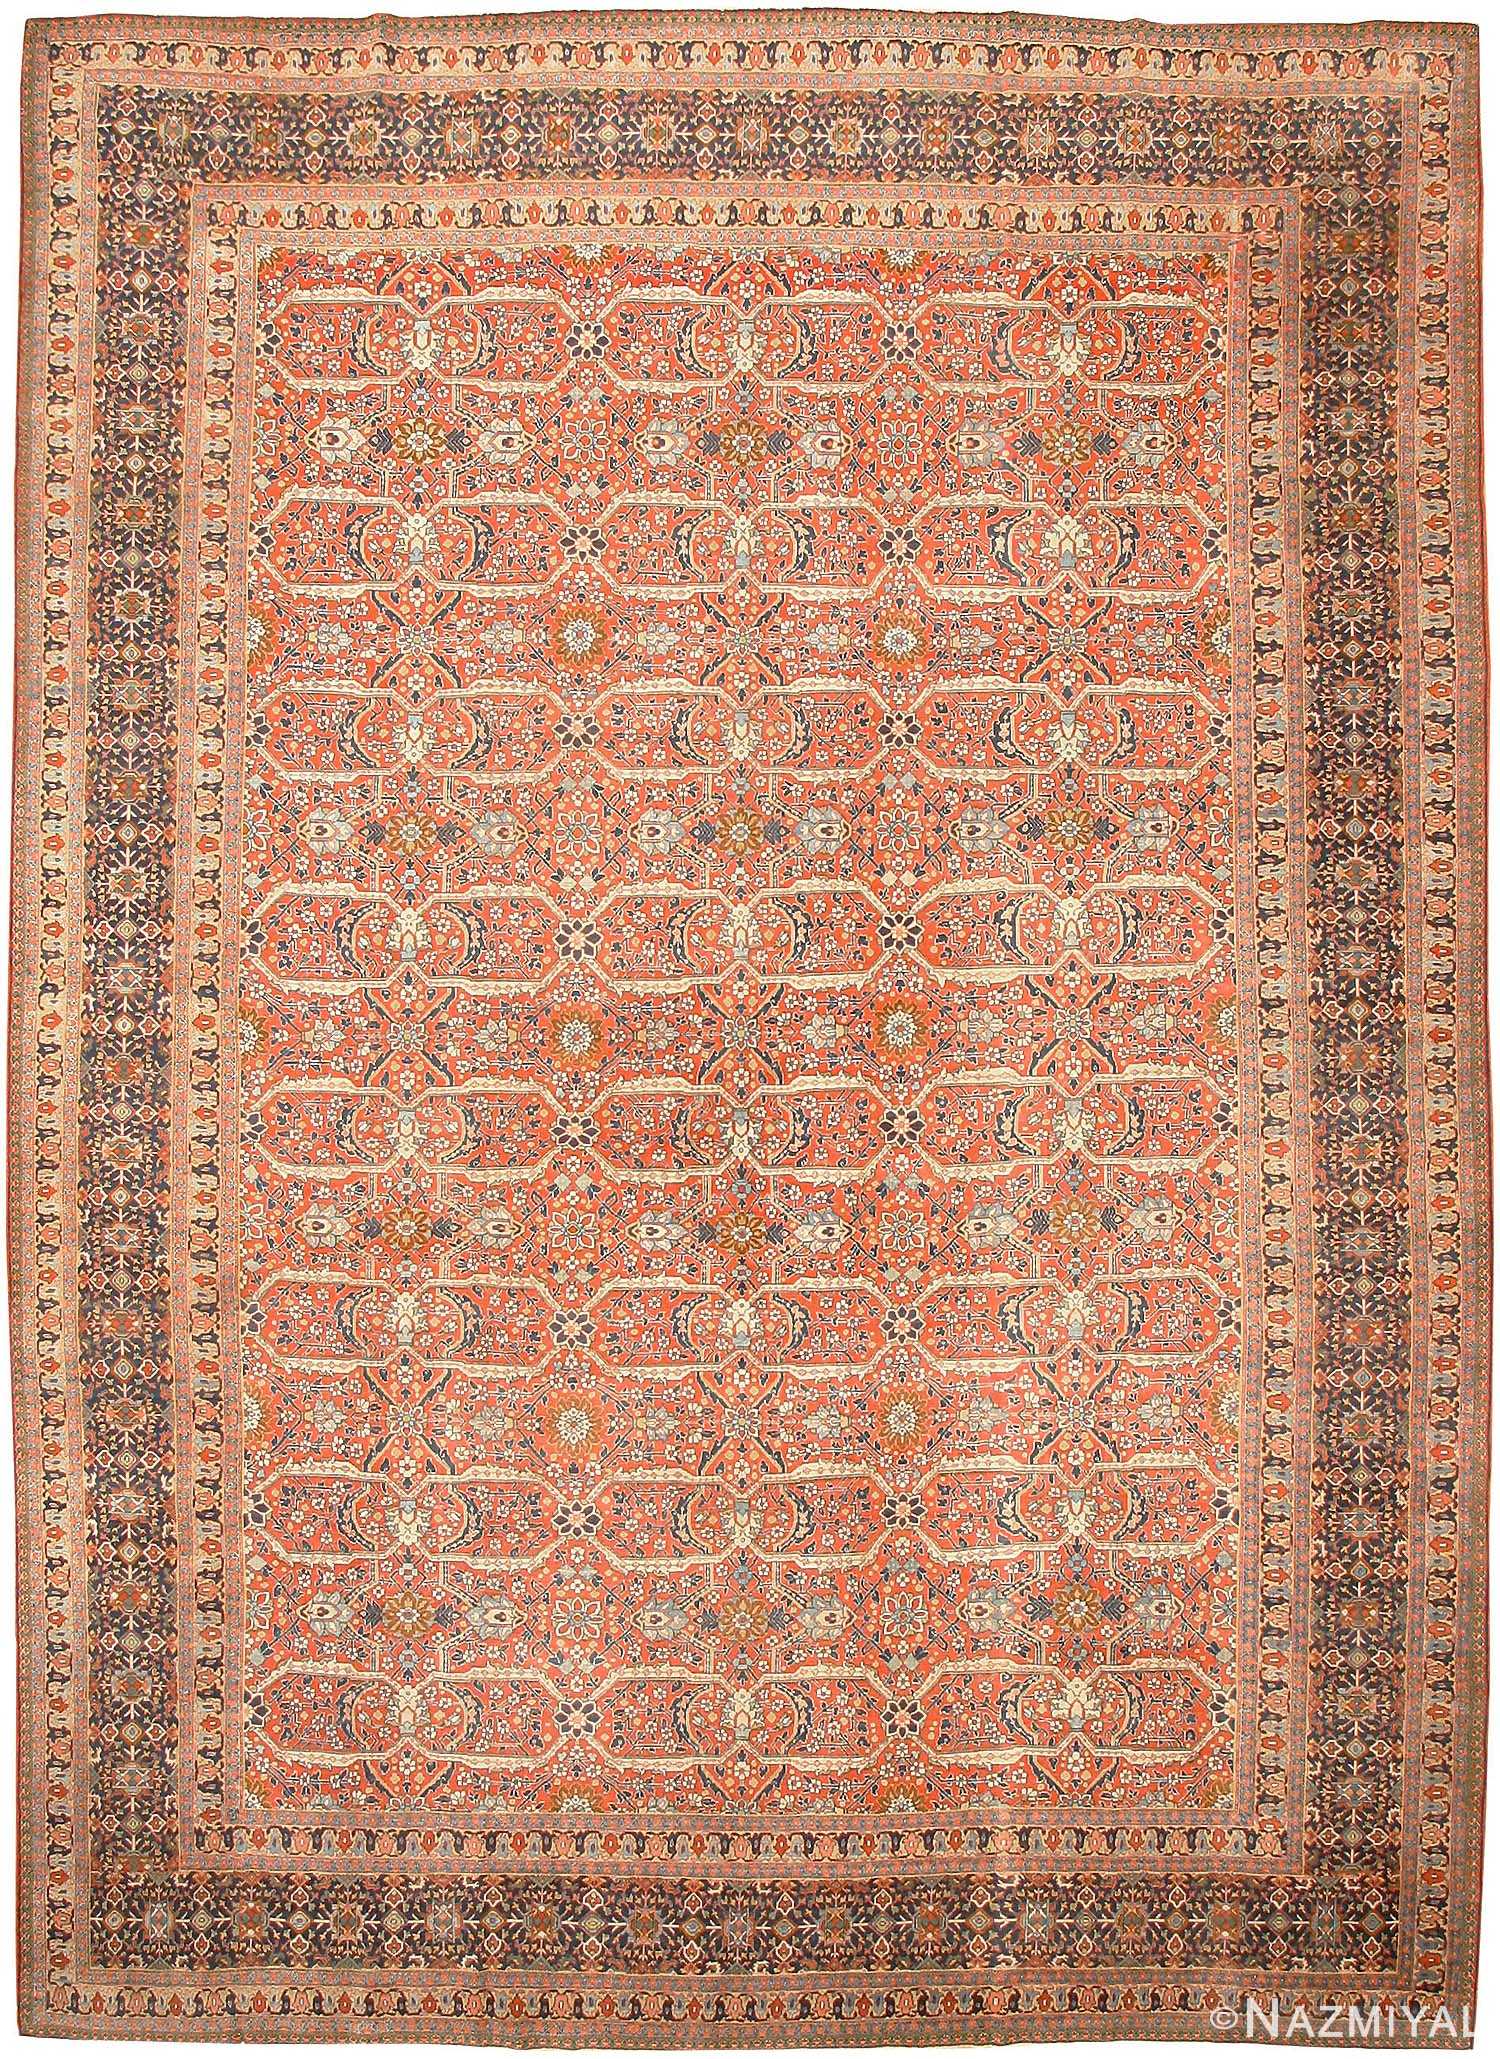 Trellis Design Carpet